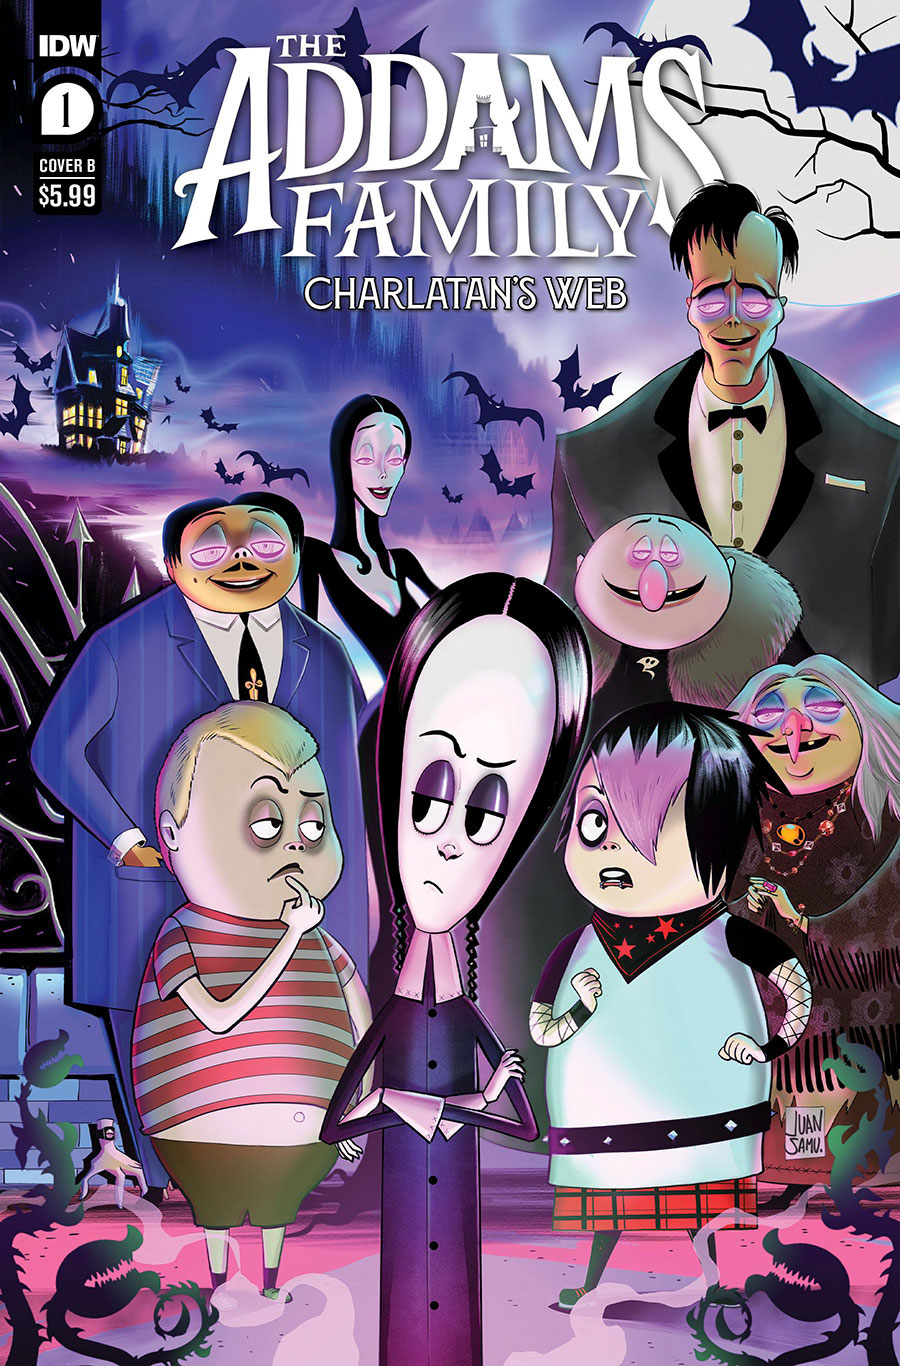 Addams Family Charlatans Web #1 Cover B Variant Juan Samu Cover